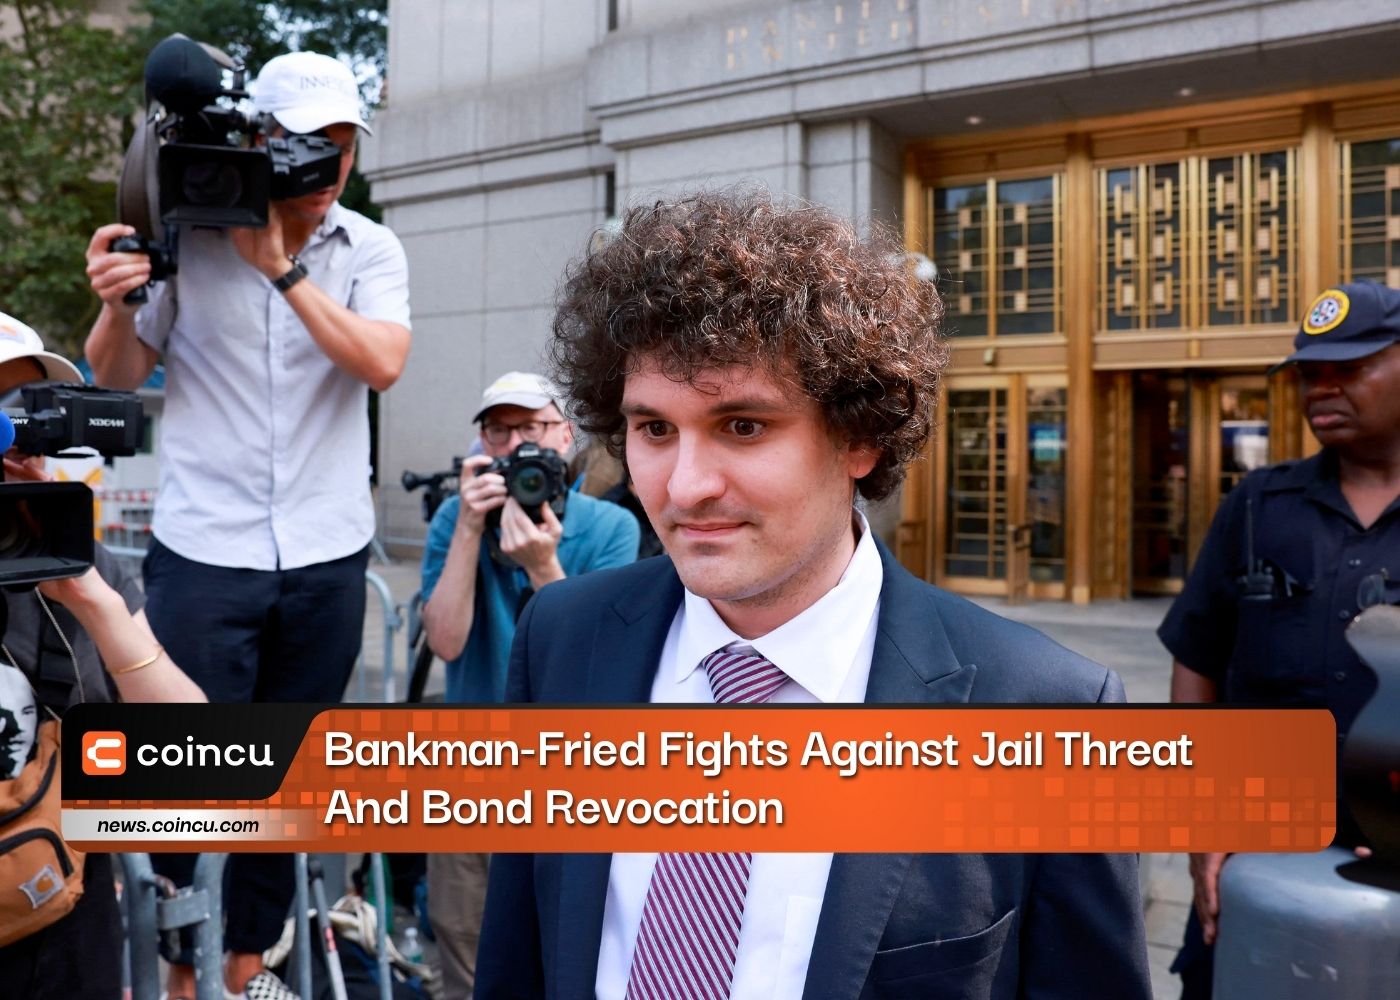 Bankman-Fried lucha contra la amenaza de cárcel y la revocación de bonos